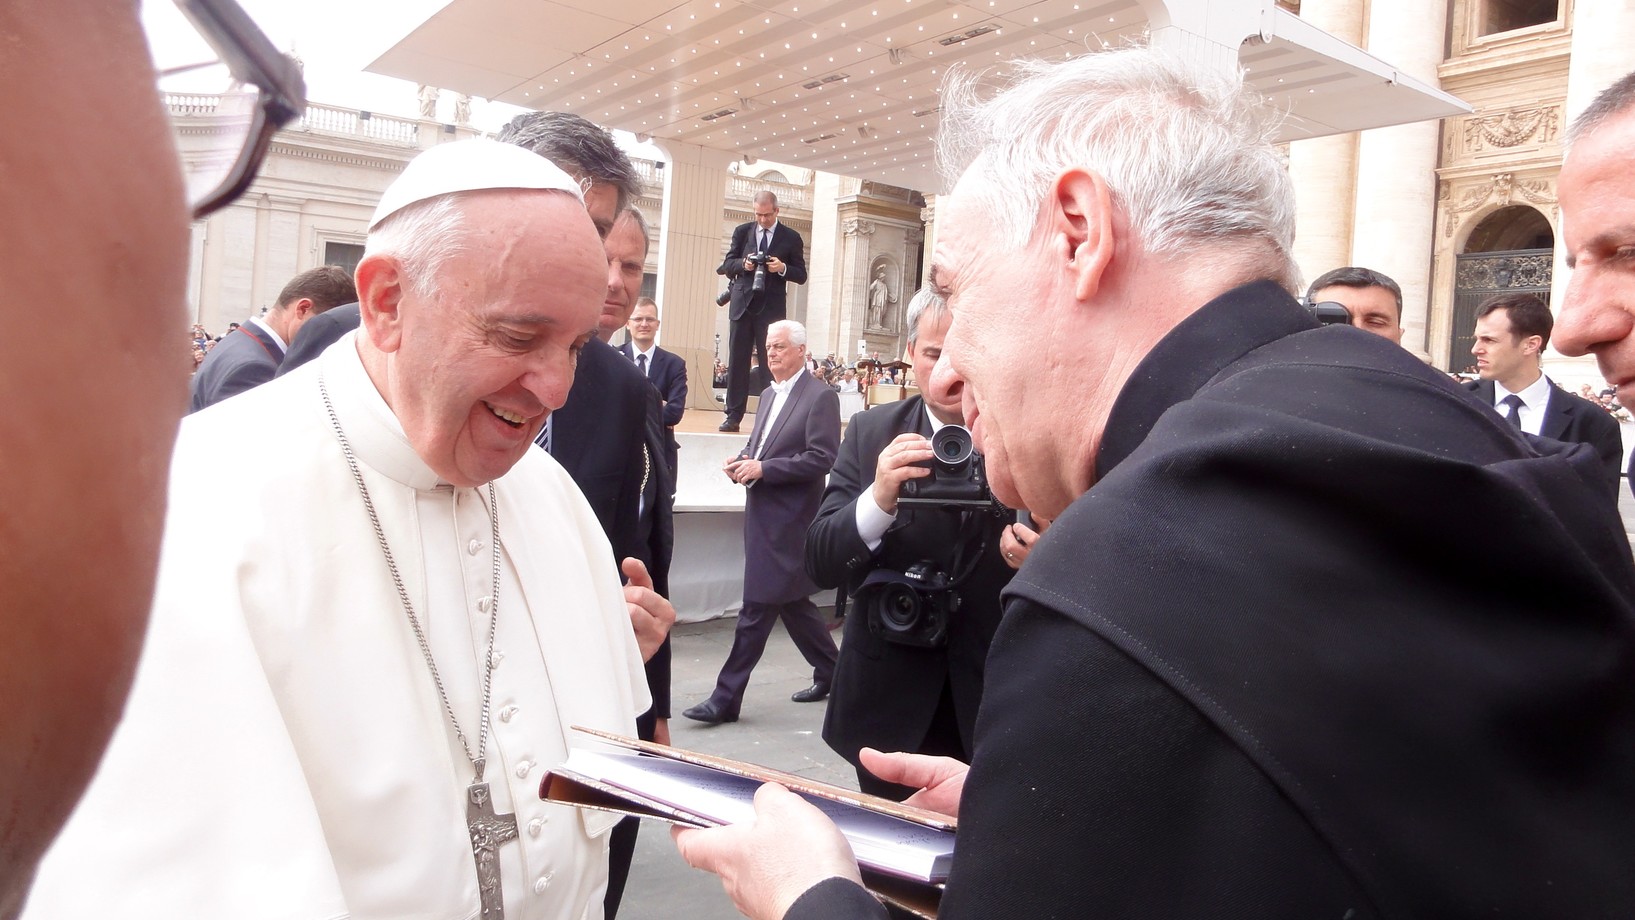 Ziel erreicht: Bruder Gerold überreicht dem Papst sein Buch (Foto: Annette Freitag/Journal21.ch)